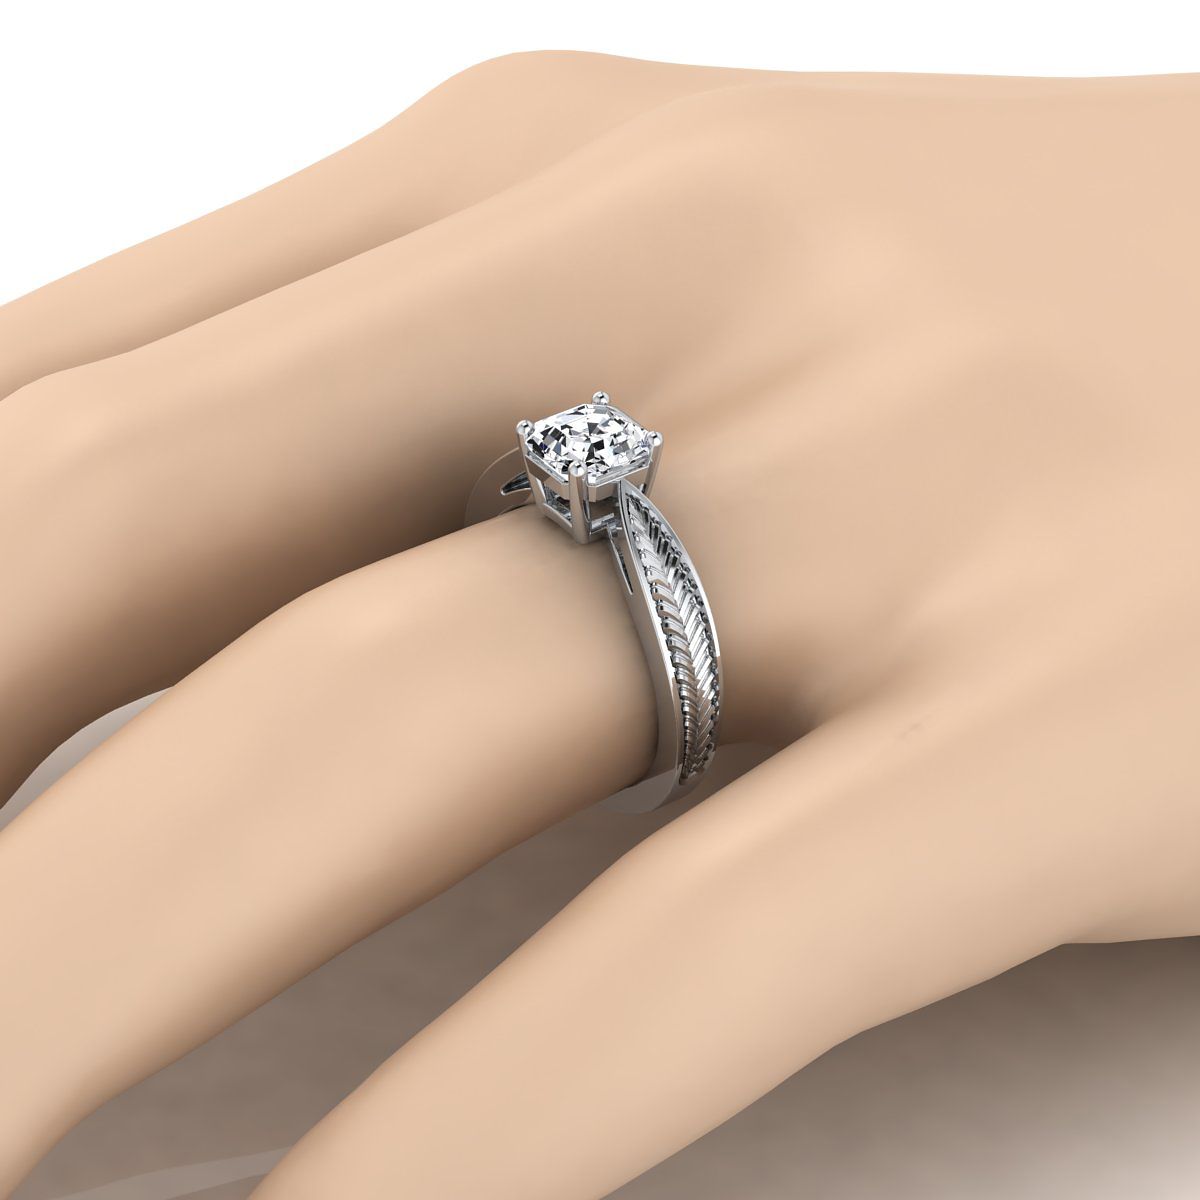 แหวนหมั้นทองคำขาว 18K Asscher Cut ลายใบไม้ที่ได้รับแรงบันดาลใจจากวินเทจ